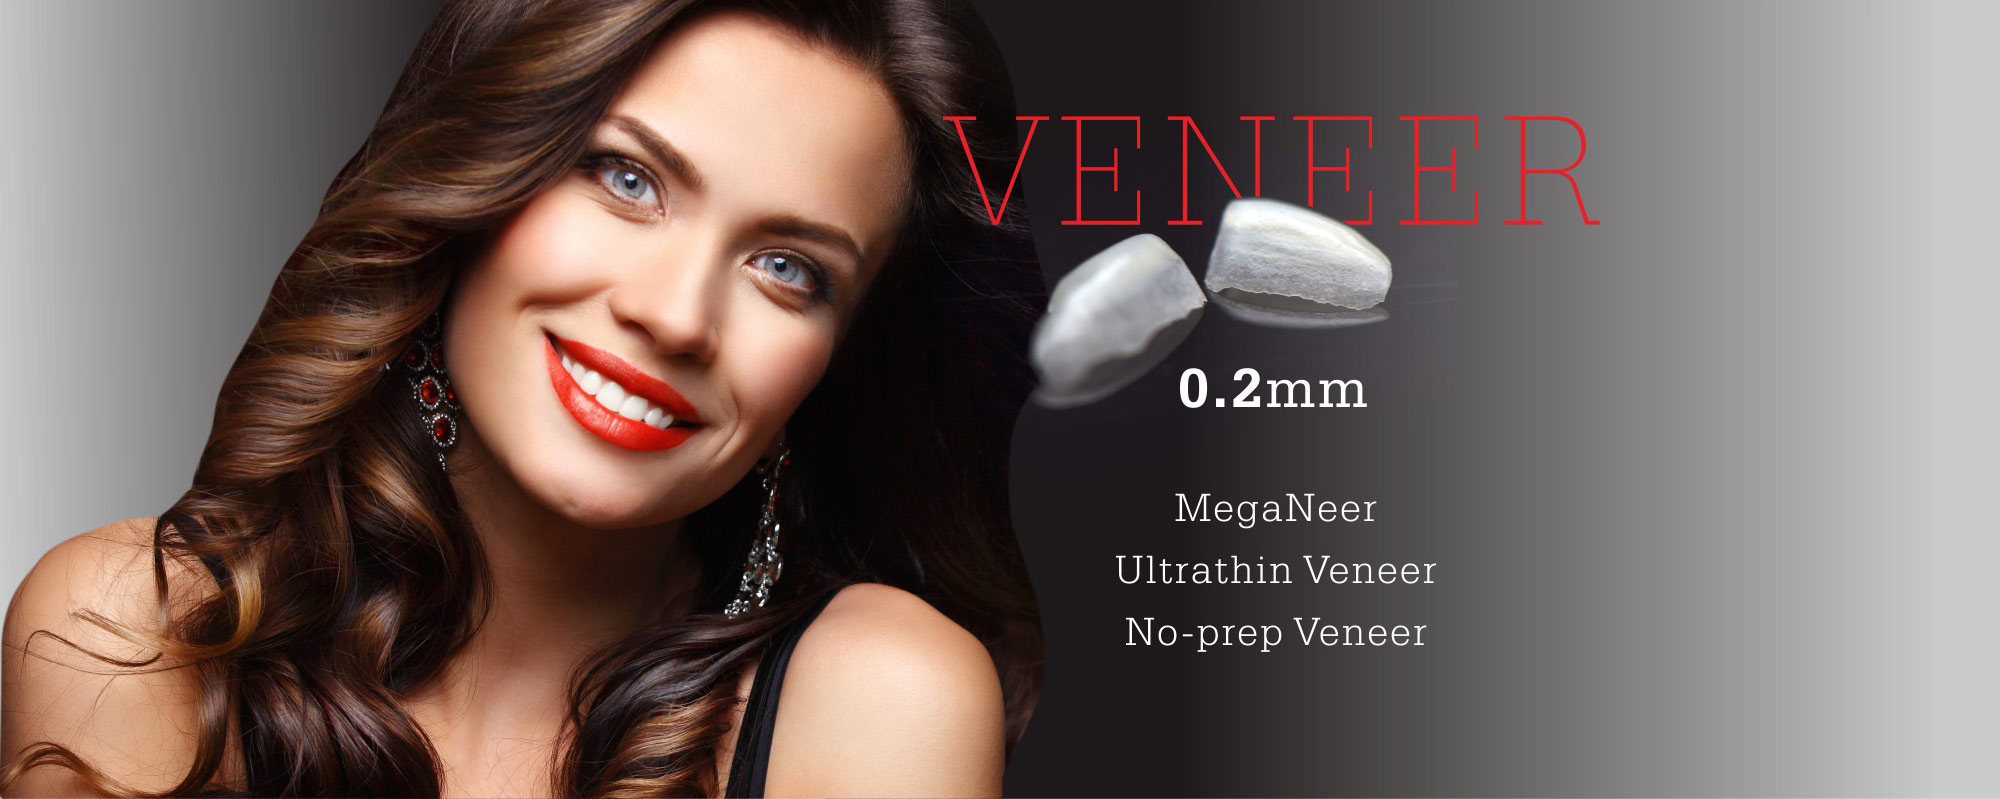 0.2mm,MegaNeer,Ultrathin Veneer,No-prep Veneer